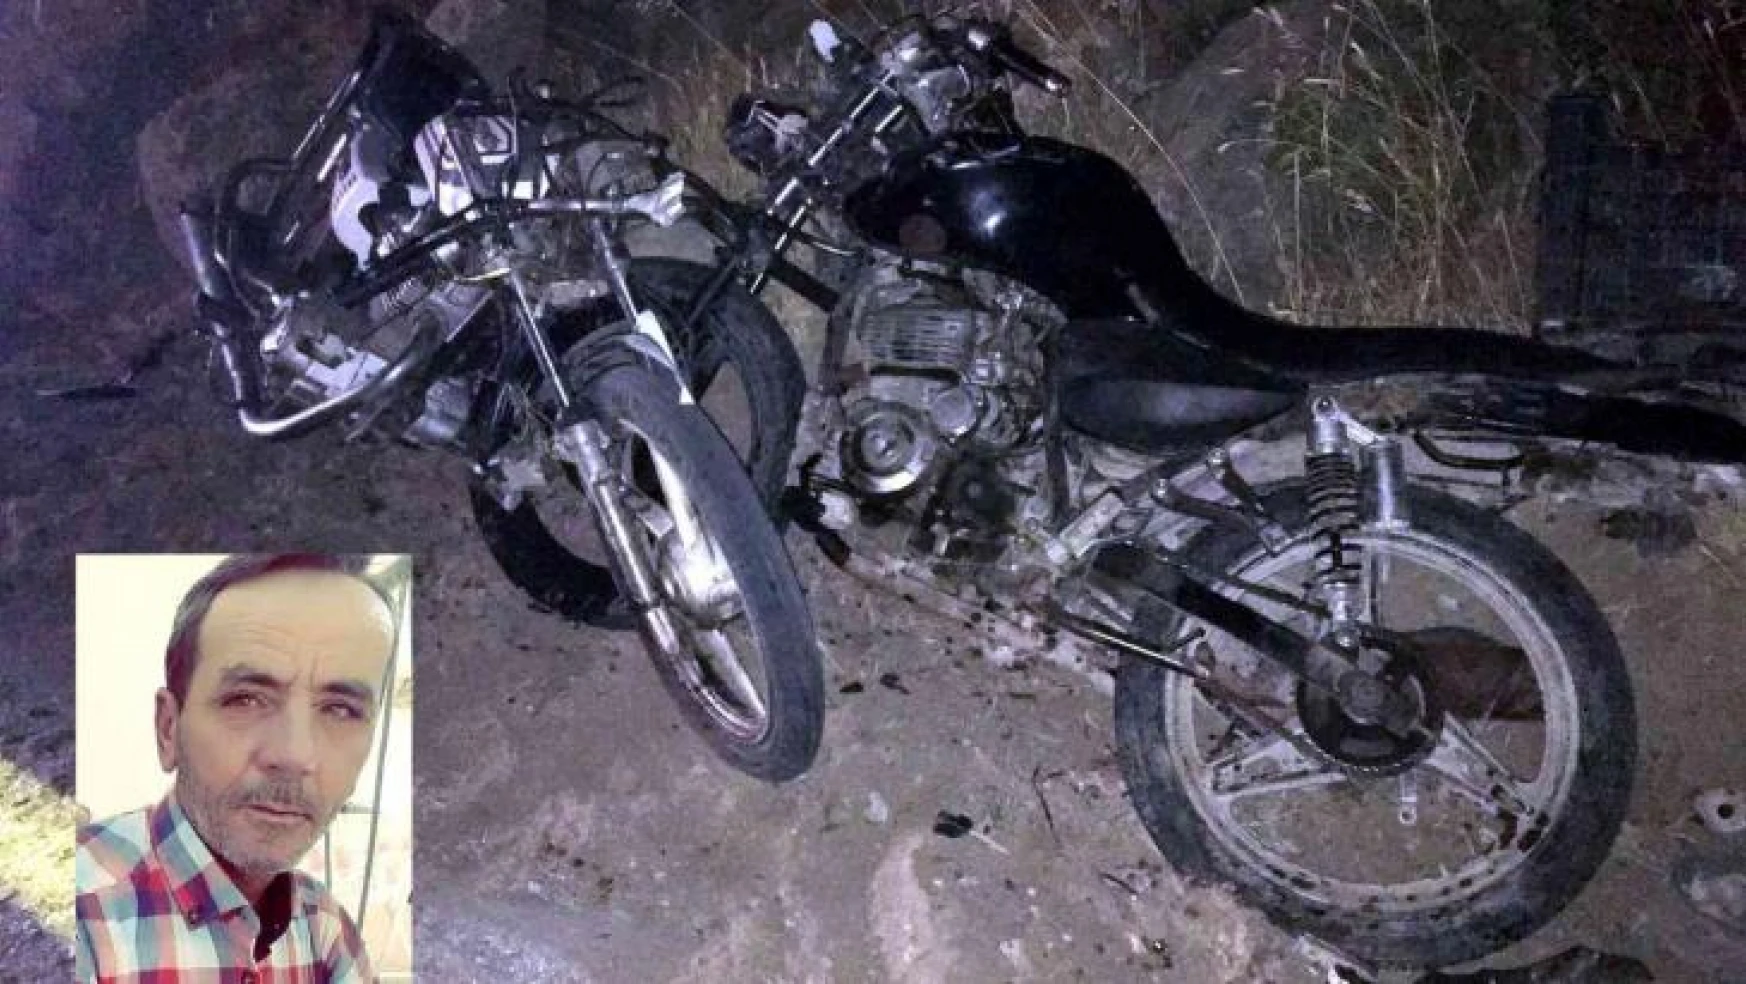 Ölümüne tesadüf...Akrabalar motosikletle çarpıştı: 1 ölü